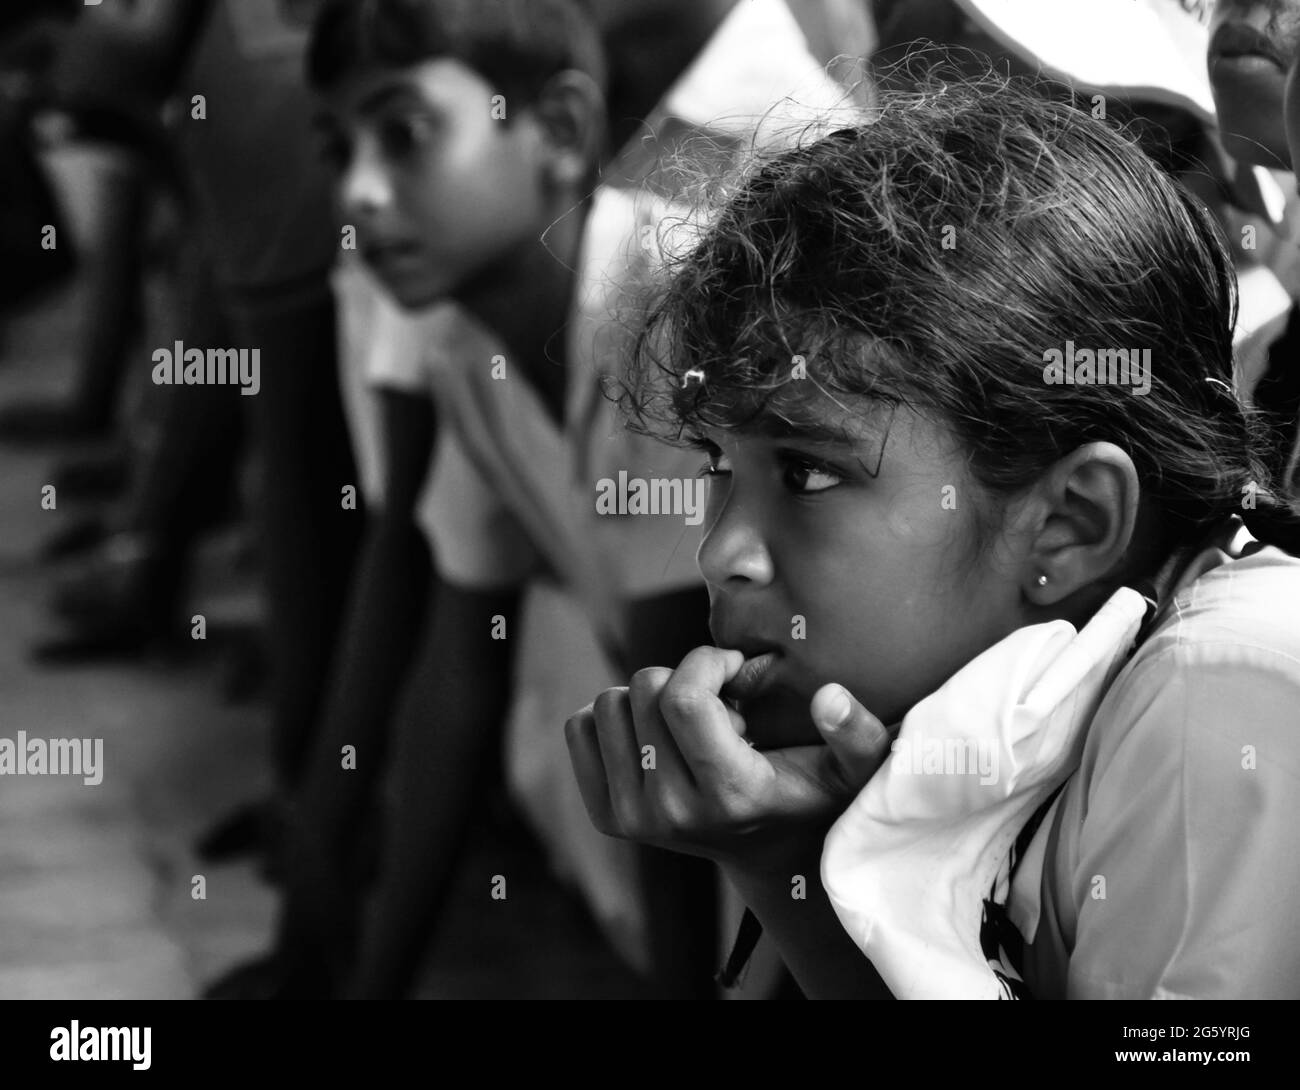 Les élèves d'école regardant un drame concer sri lanka, asie Banque D'Images